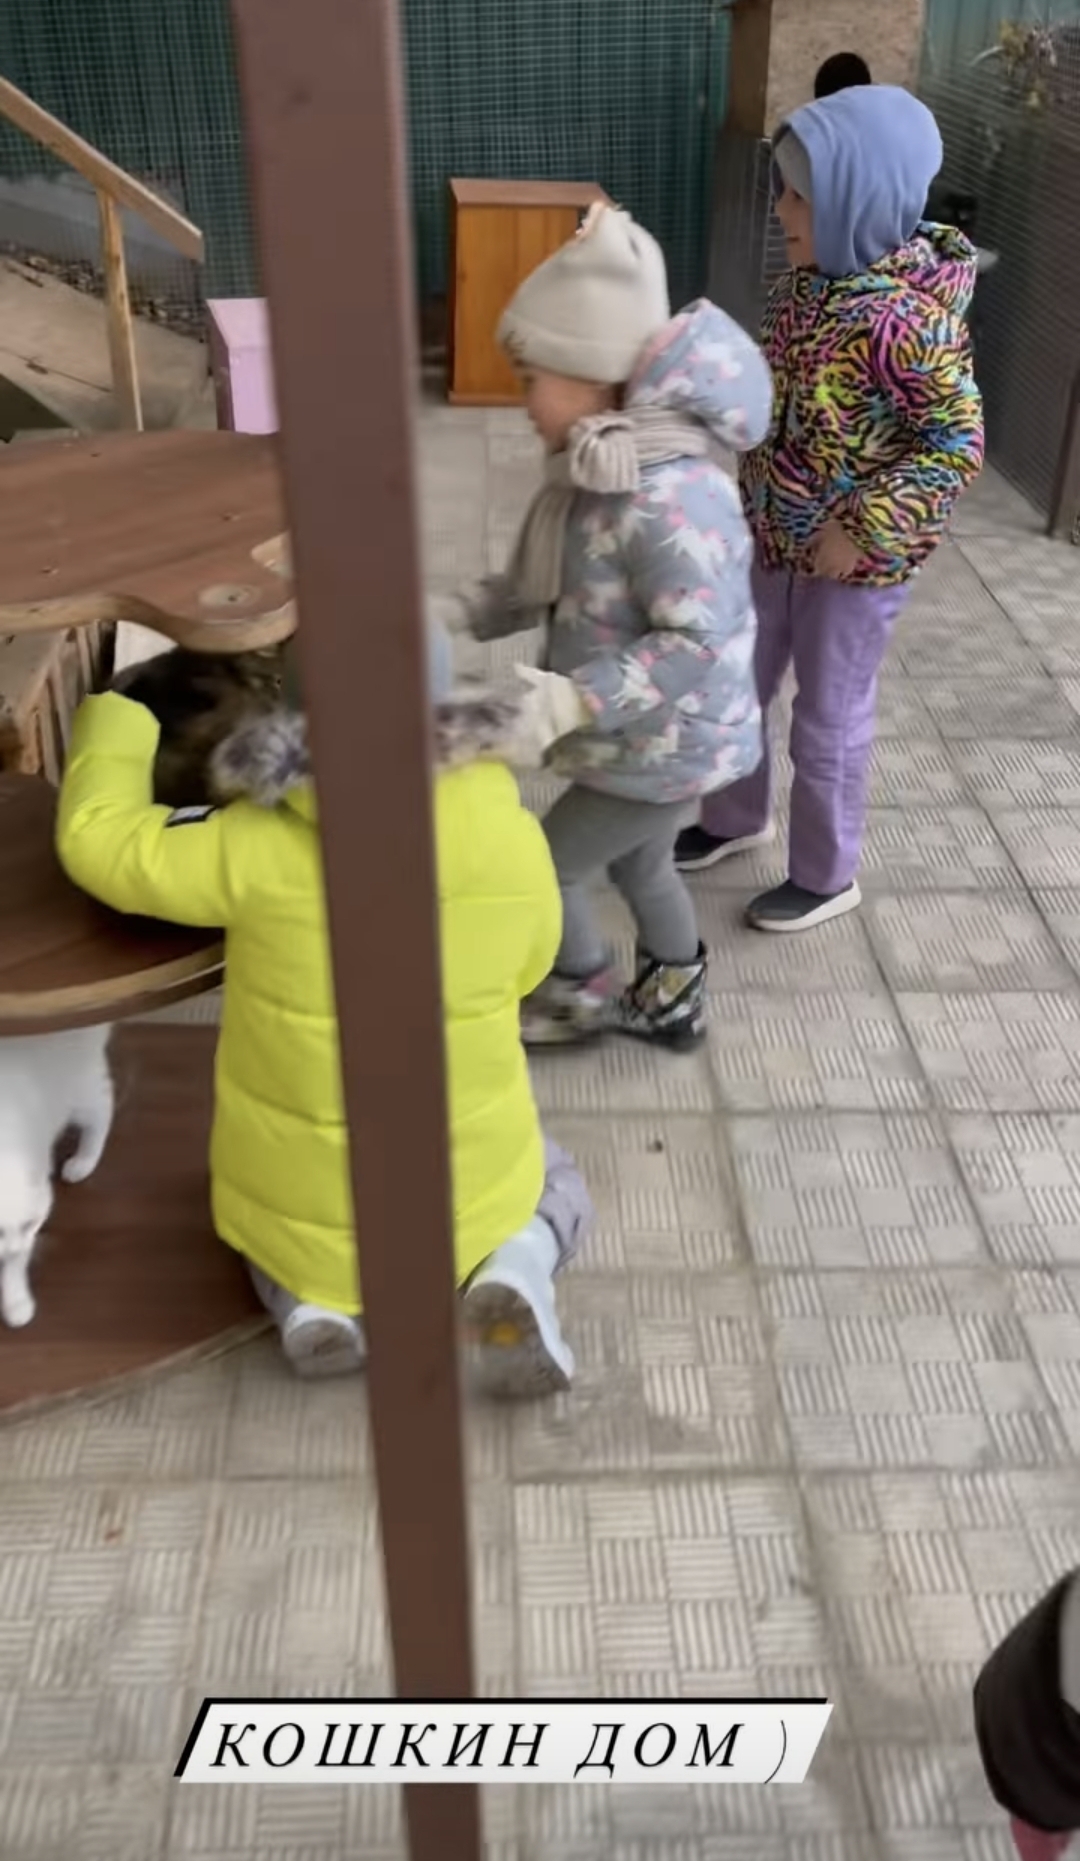 Дочки Оксаны Самойловой и Джигана съездили в приют, потратив "карманные деньги" на корм для собак